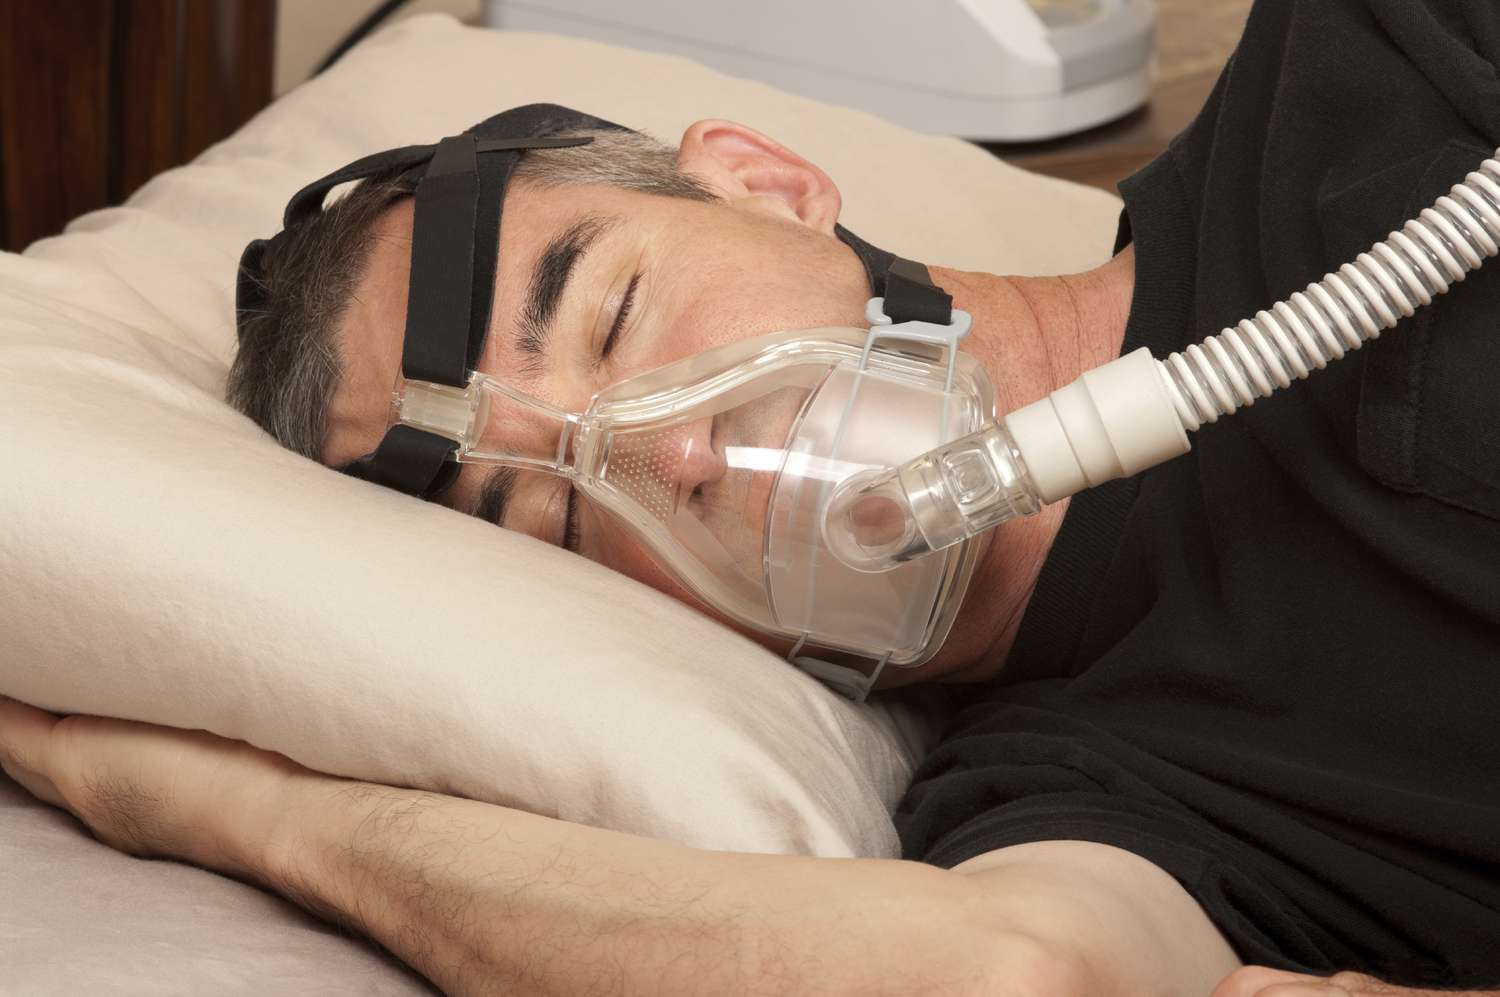 تجهیزات کمک تنفسی: ونتیلاتور، اکسیژنساز، دستگاه مانیتورینگ